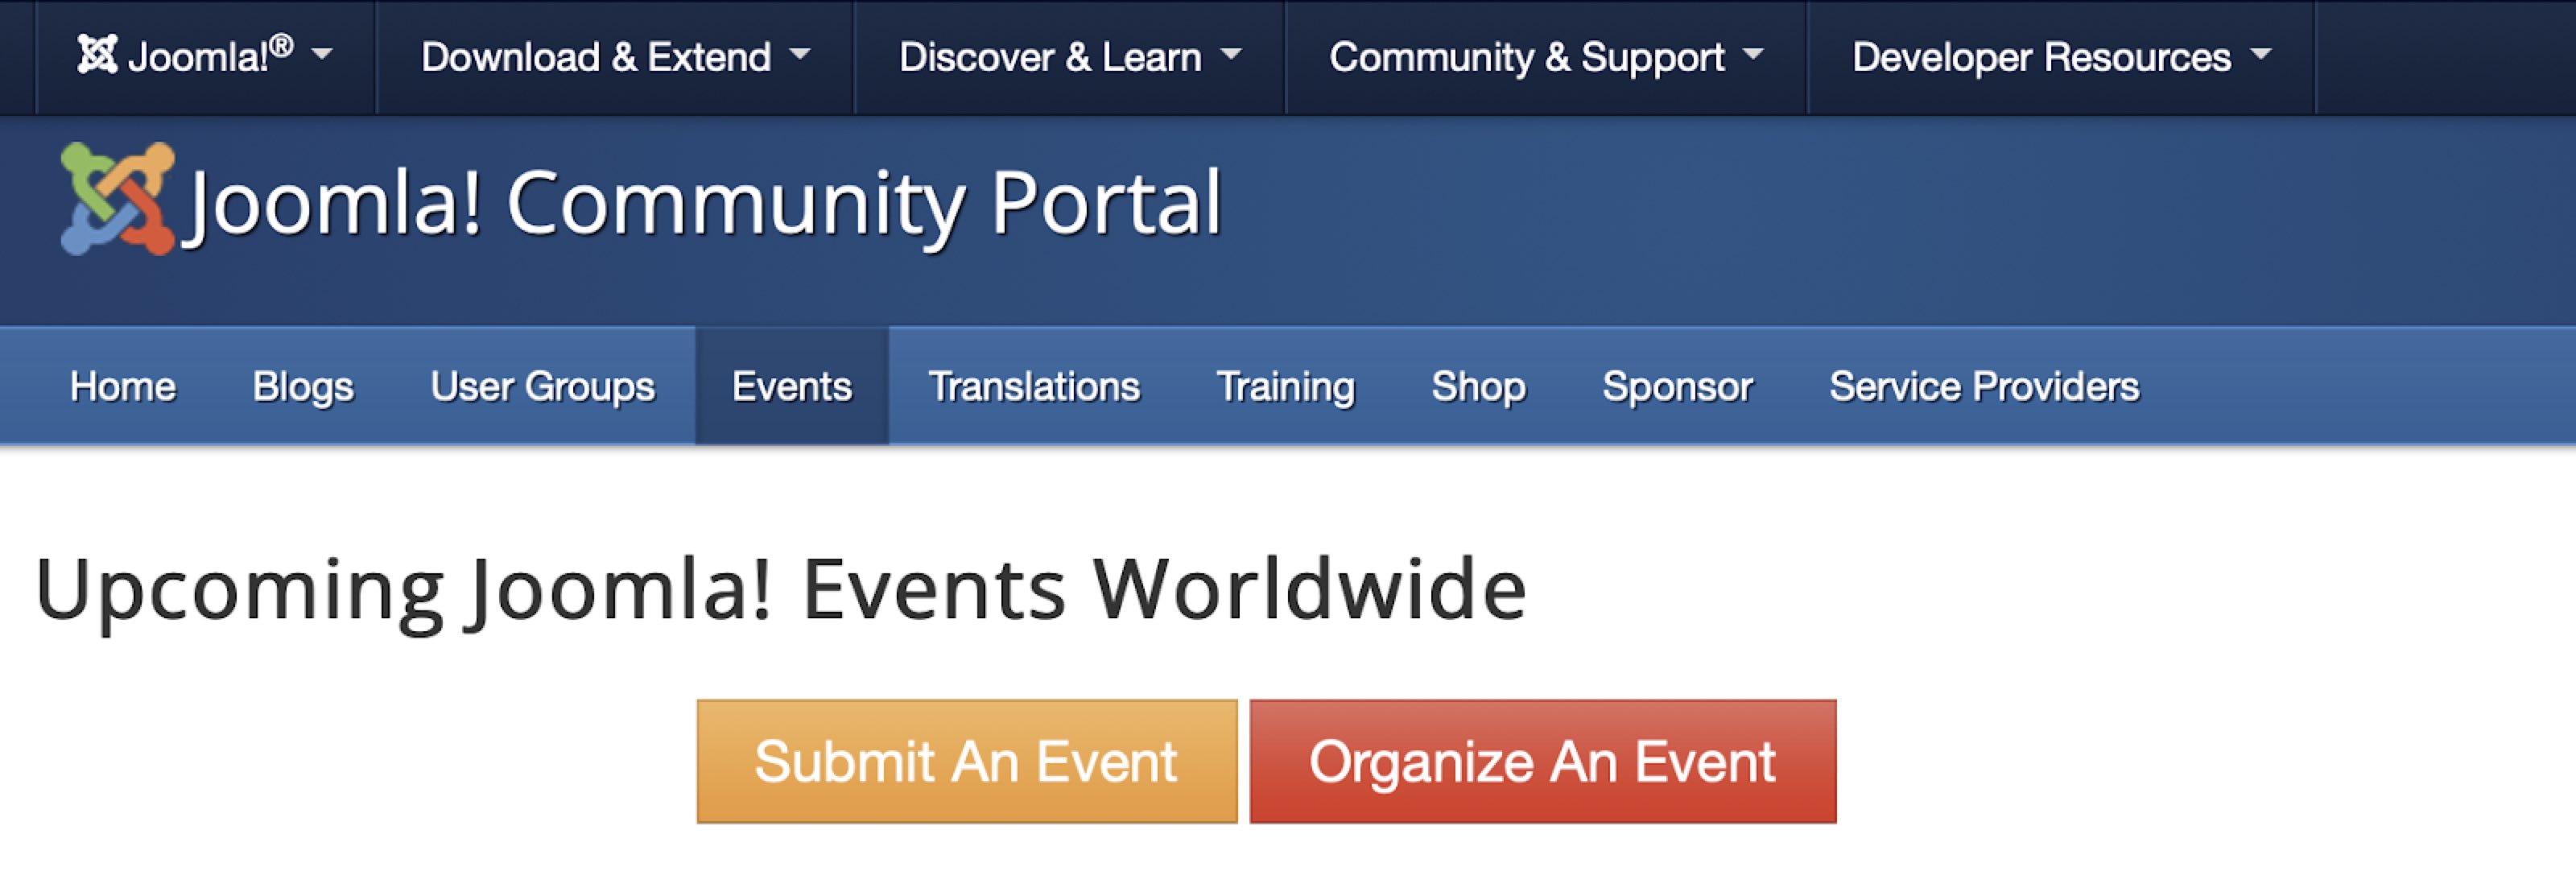 soumettre un événement sur le portail communautaire